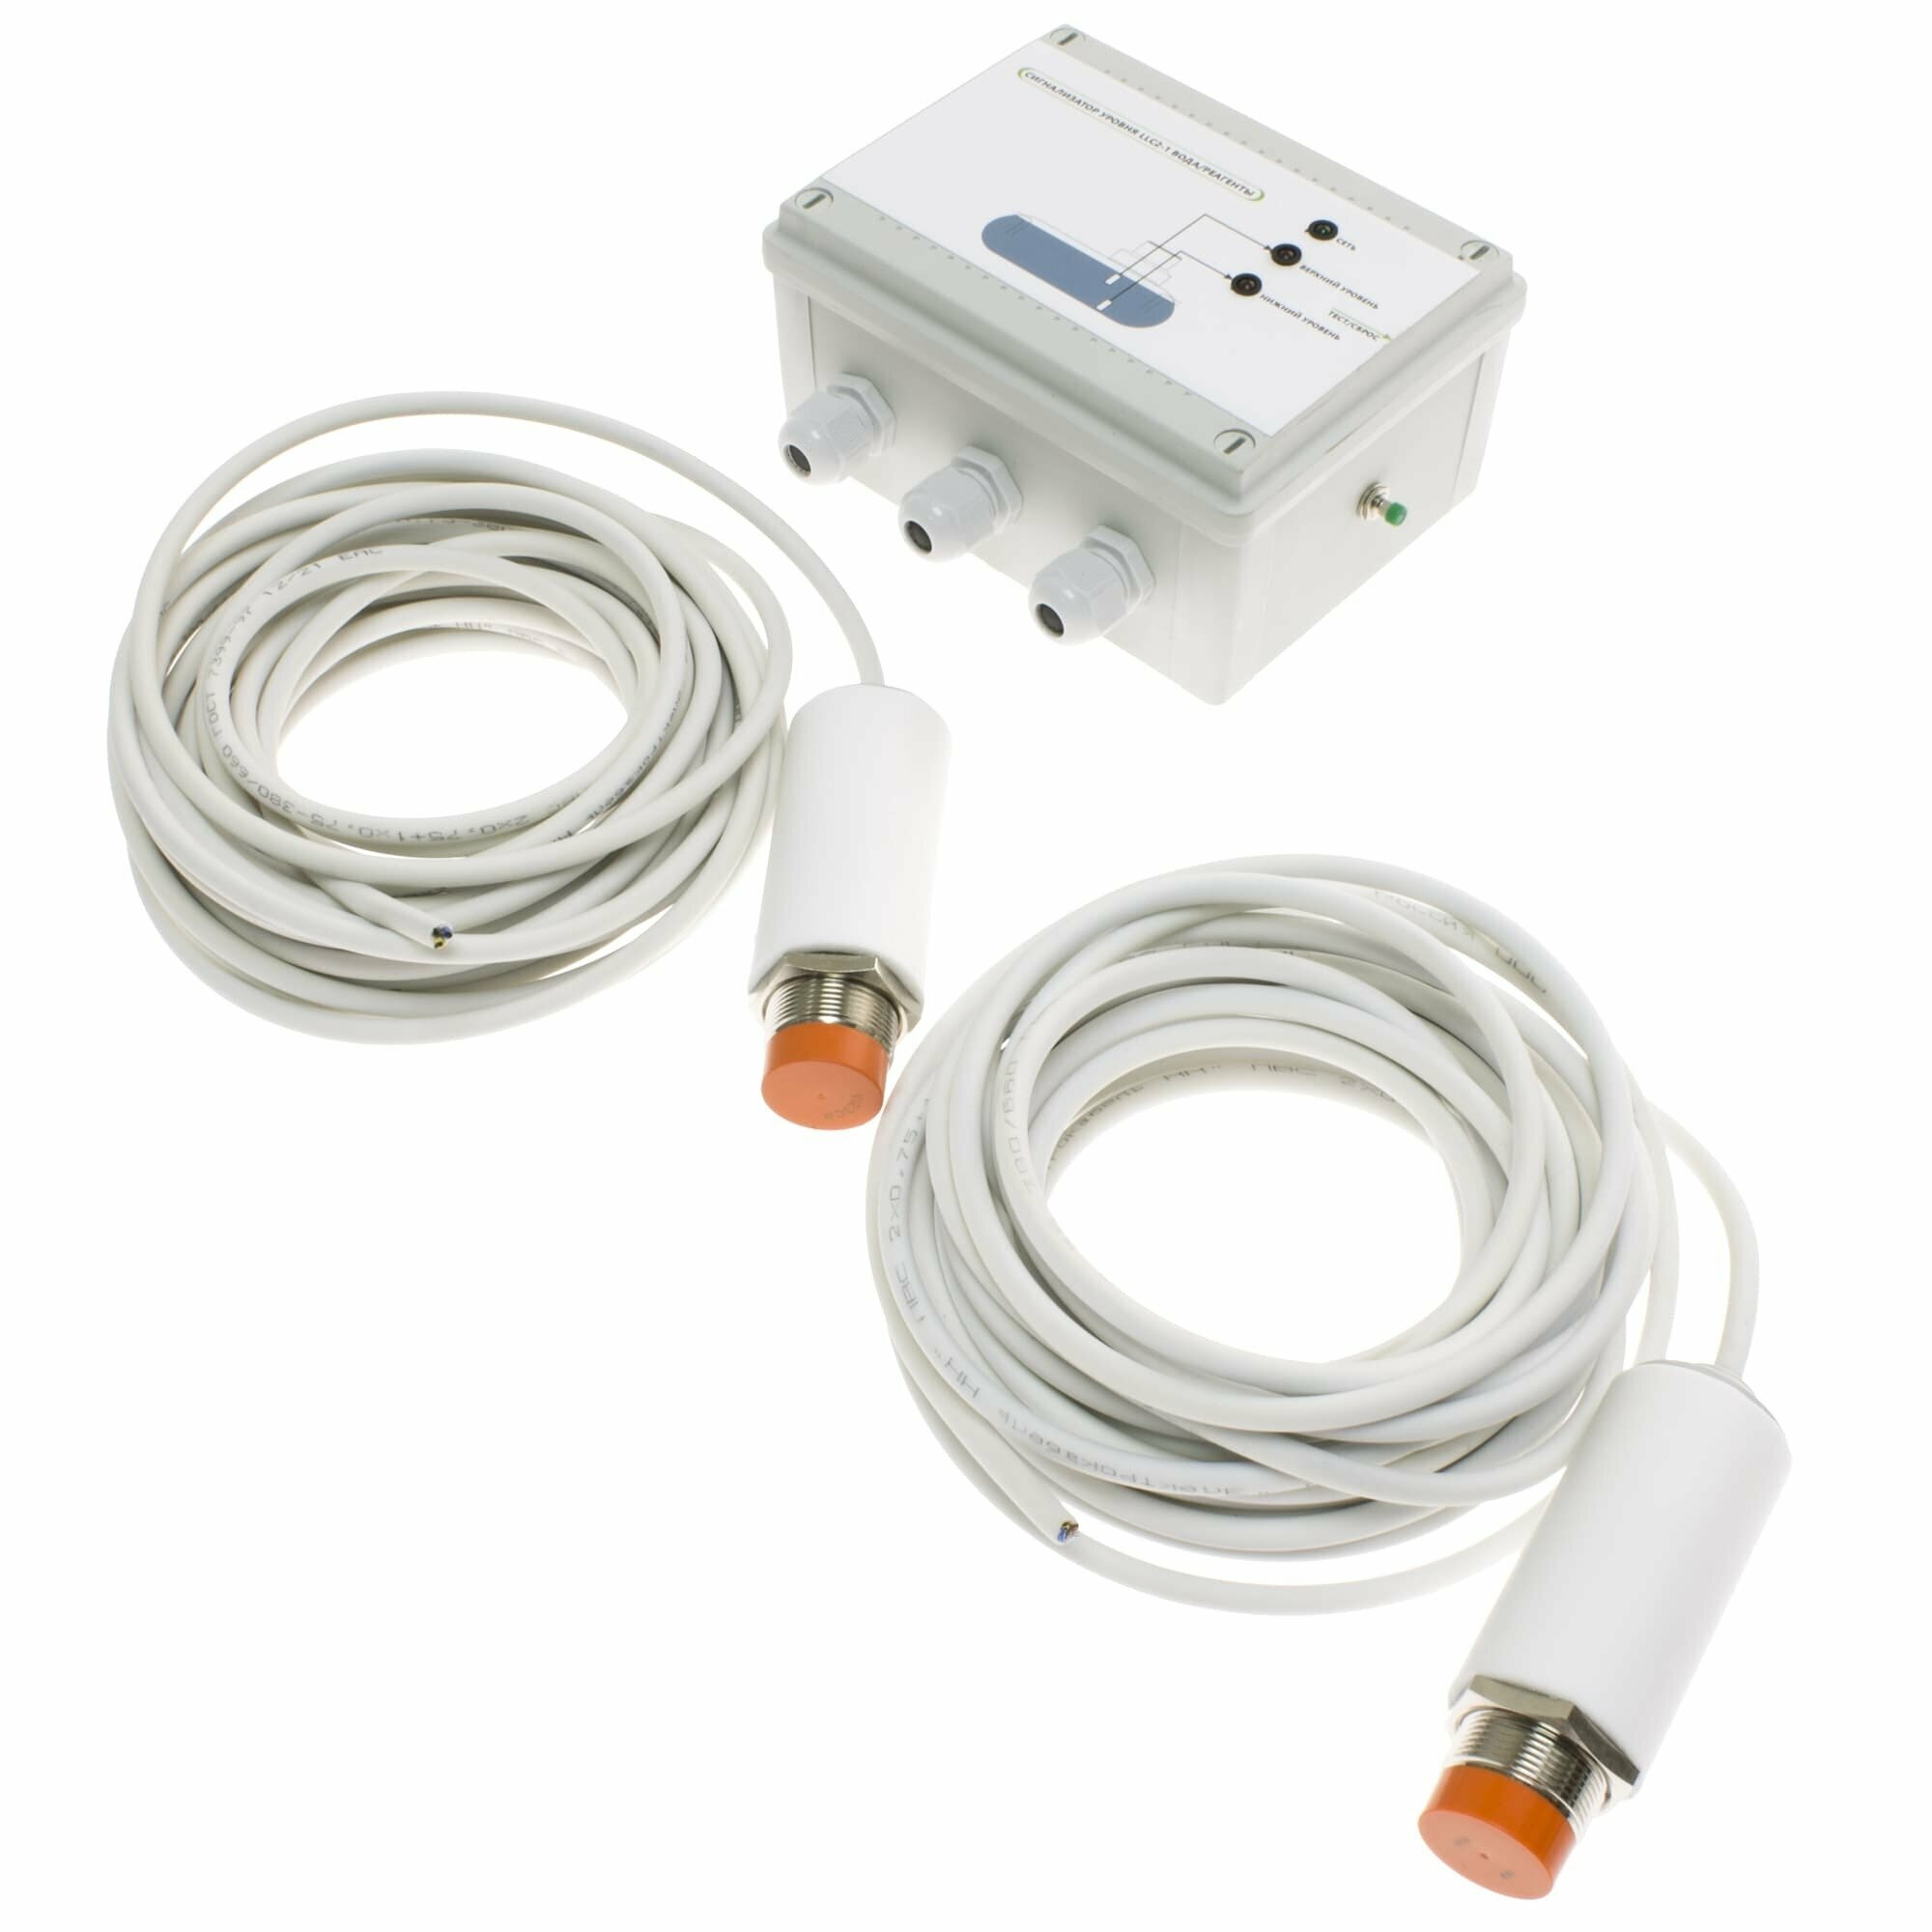 Сигнализатор уровня воды LLC2-1. С двумя датчиками. (АЛП)